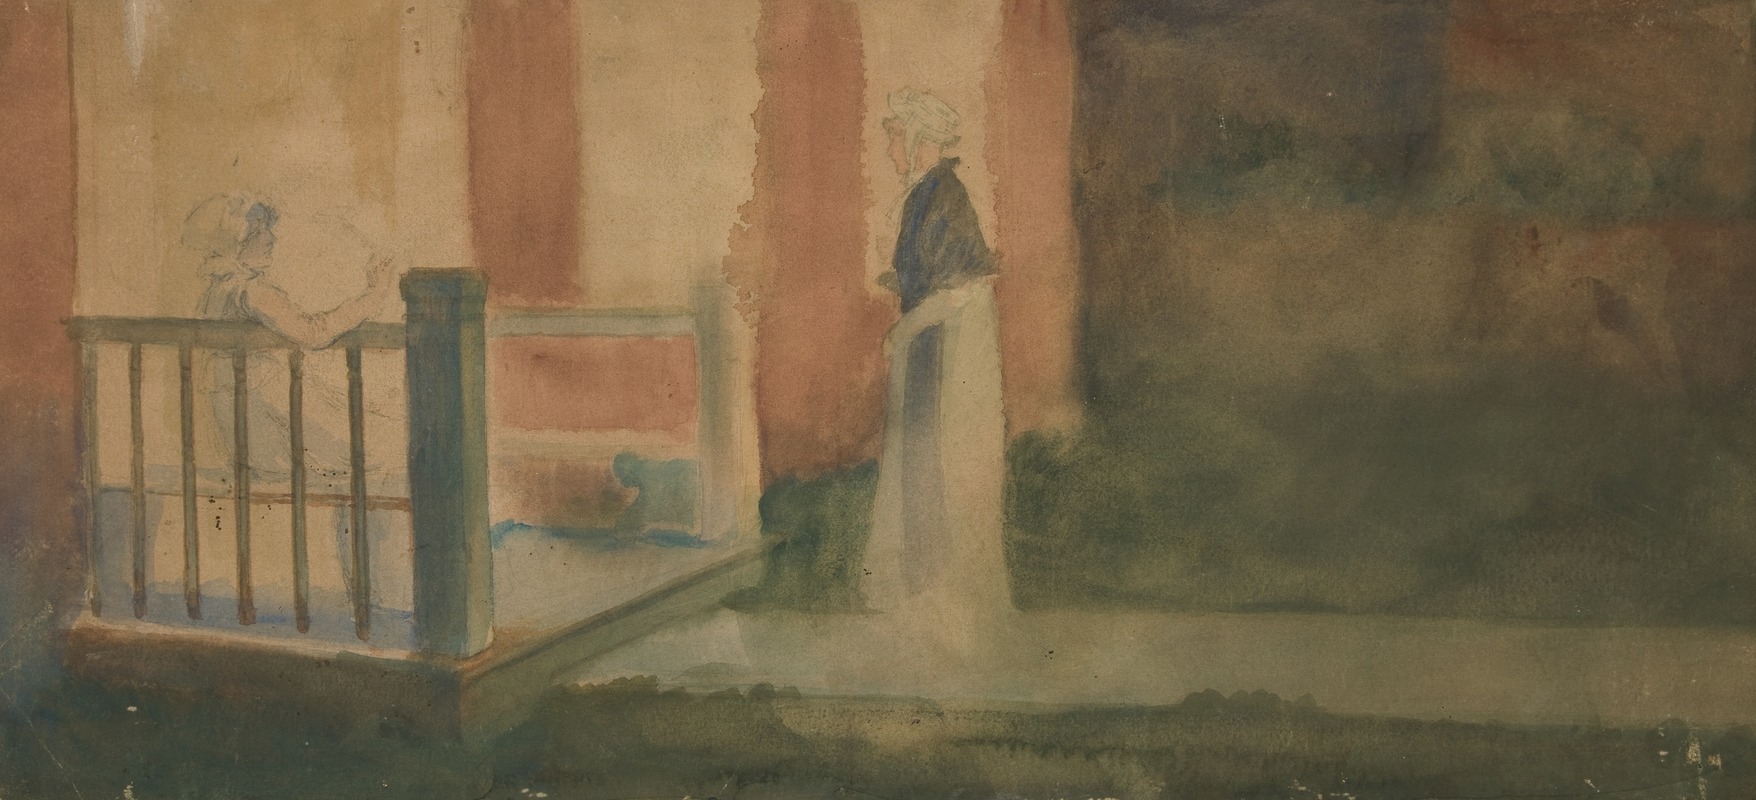 Edwin Austin Abbey - Two women conversing on a porch